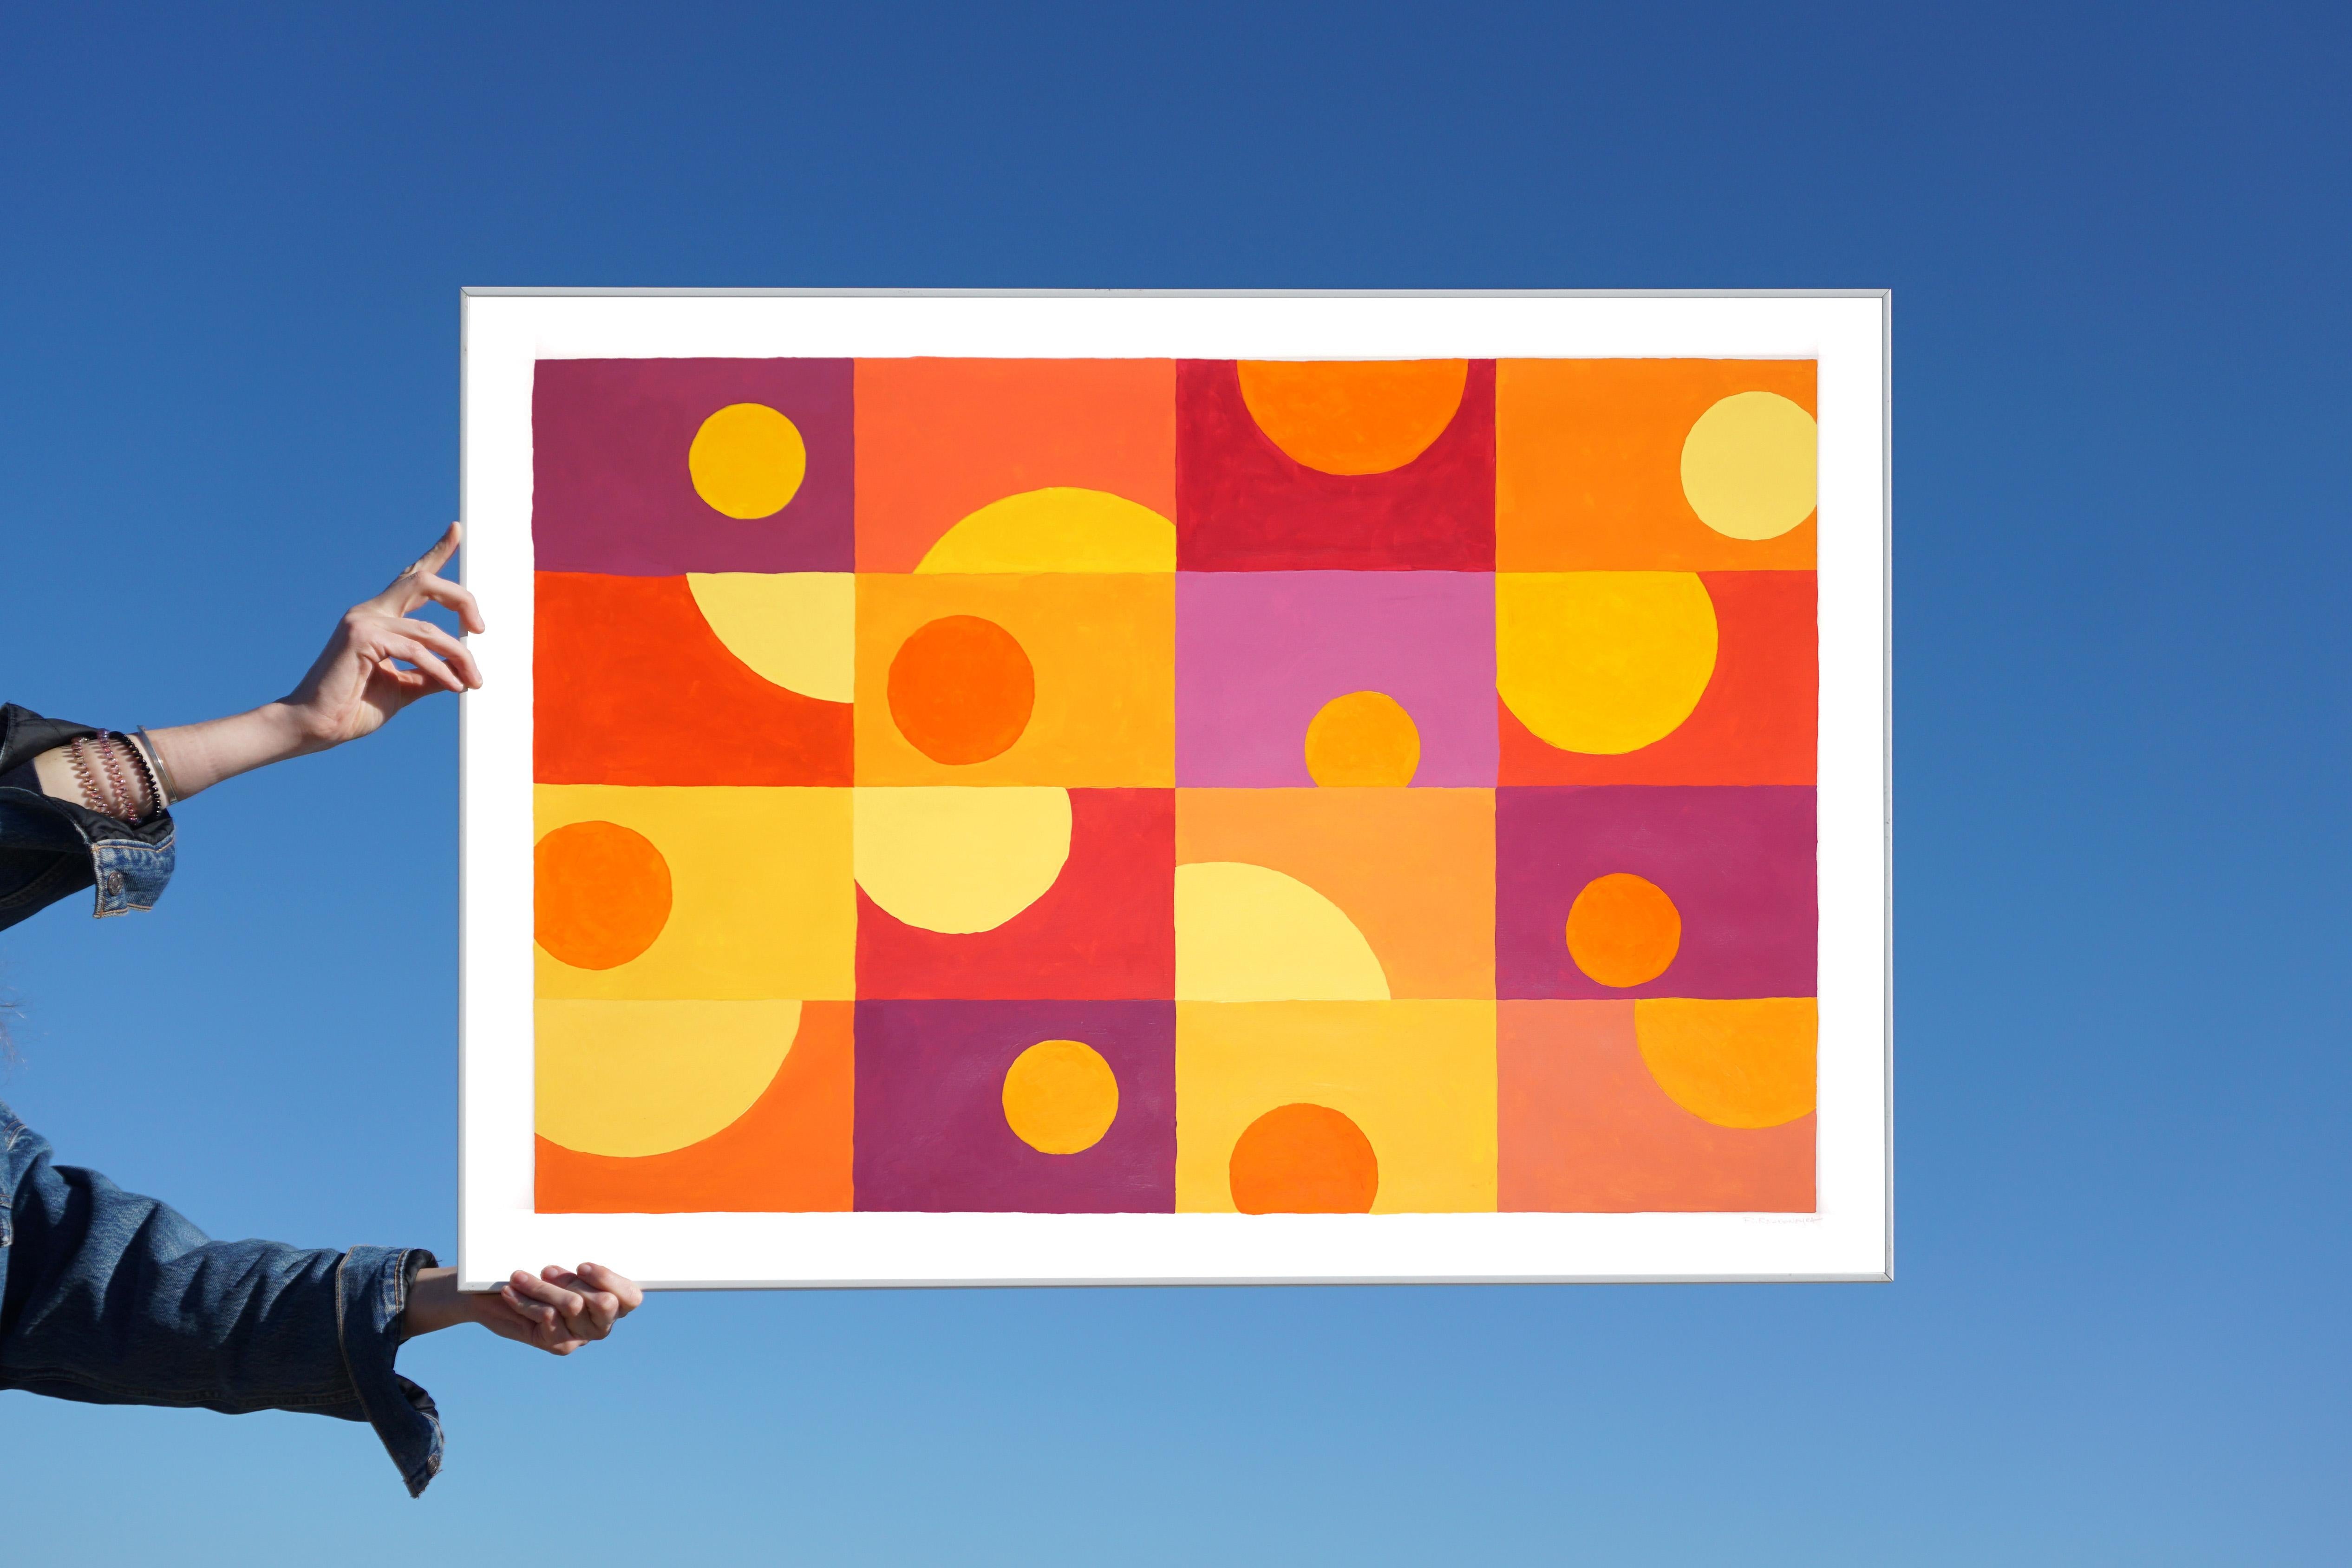 Sechzehn Sonnenuntergänge, Warme Töne Gelb, Orange, Rot, Geometrische Horizontalraster-Kacheln – Painting von Ryan Rivadeneyra